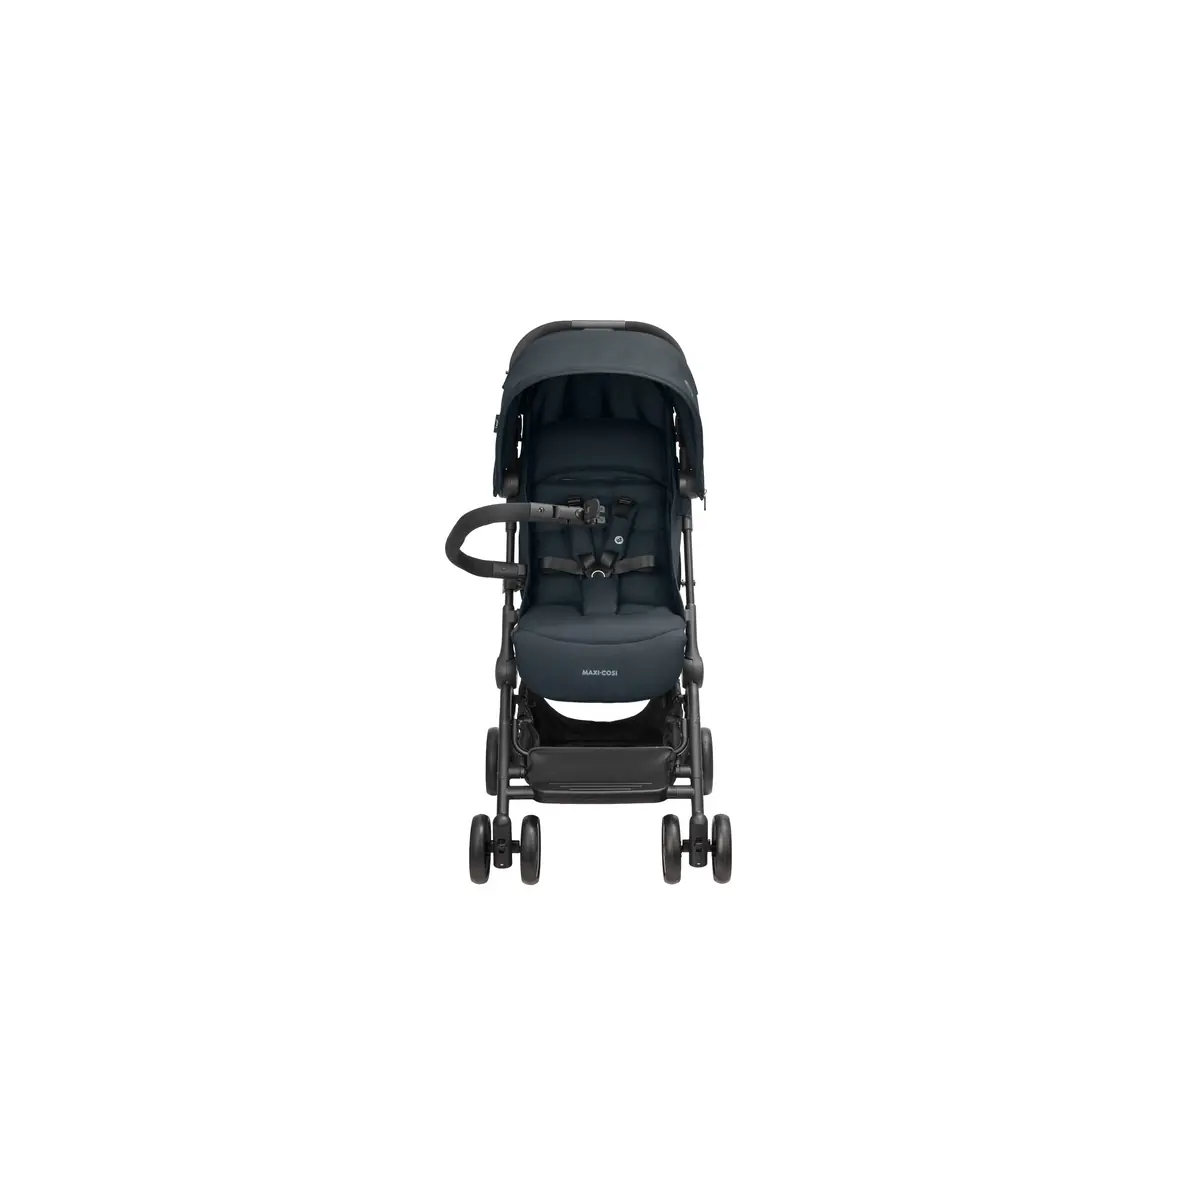 Bébé Confort/Maxi Cosi Stroller Lara, Nomad Grey - Only 6 kg